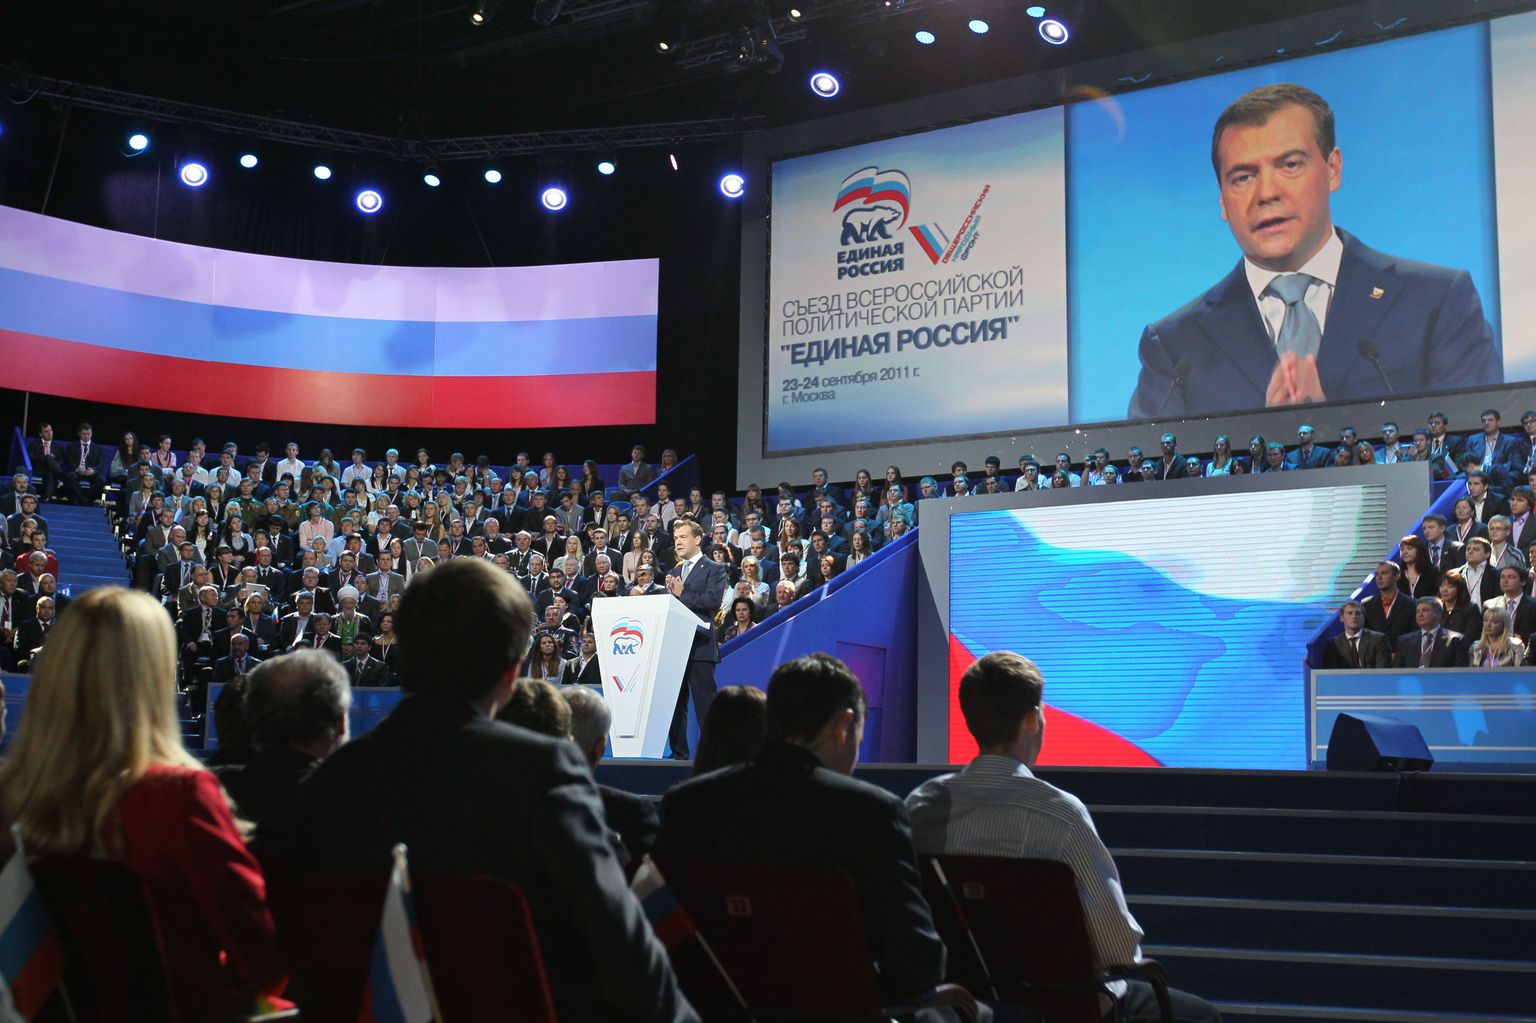 Ühtse Venemaa kongress Lužniki spordikompleksis, kus riigipea Dmitri Medvedev astus kõnega üles ka täna.